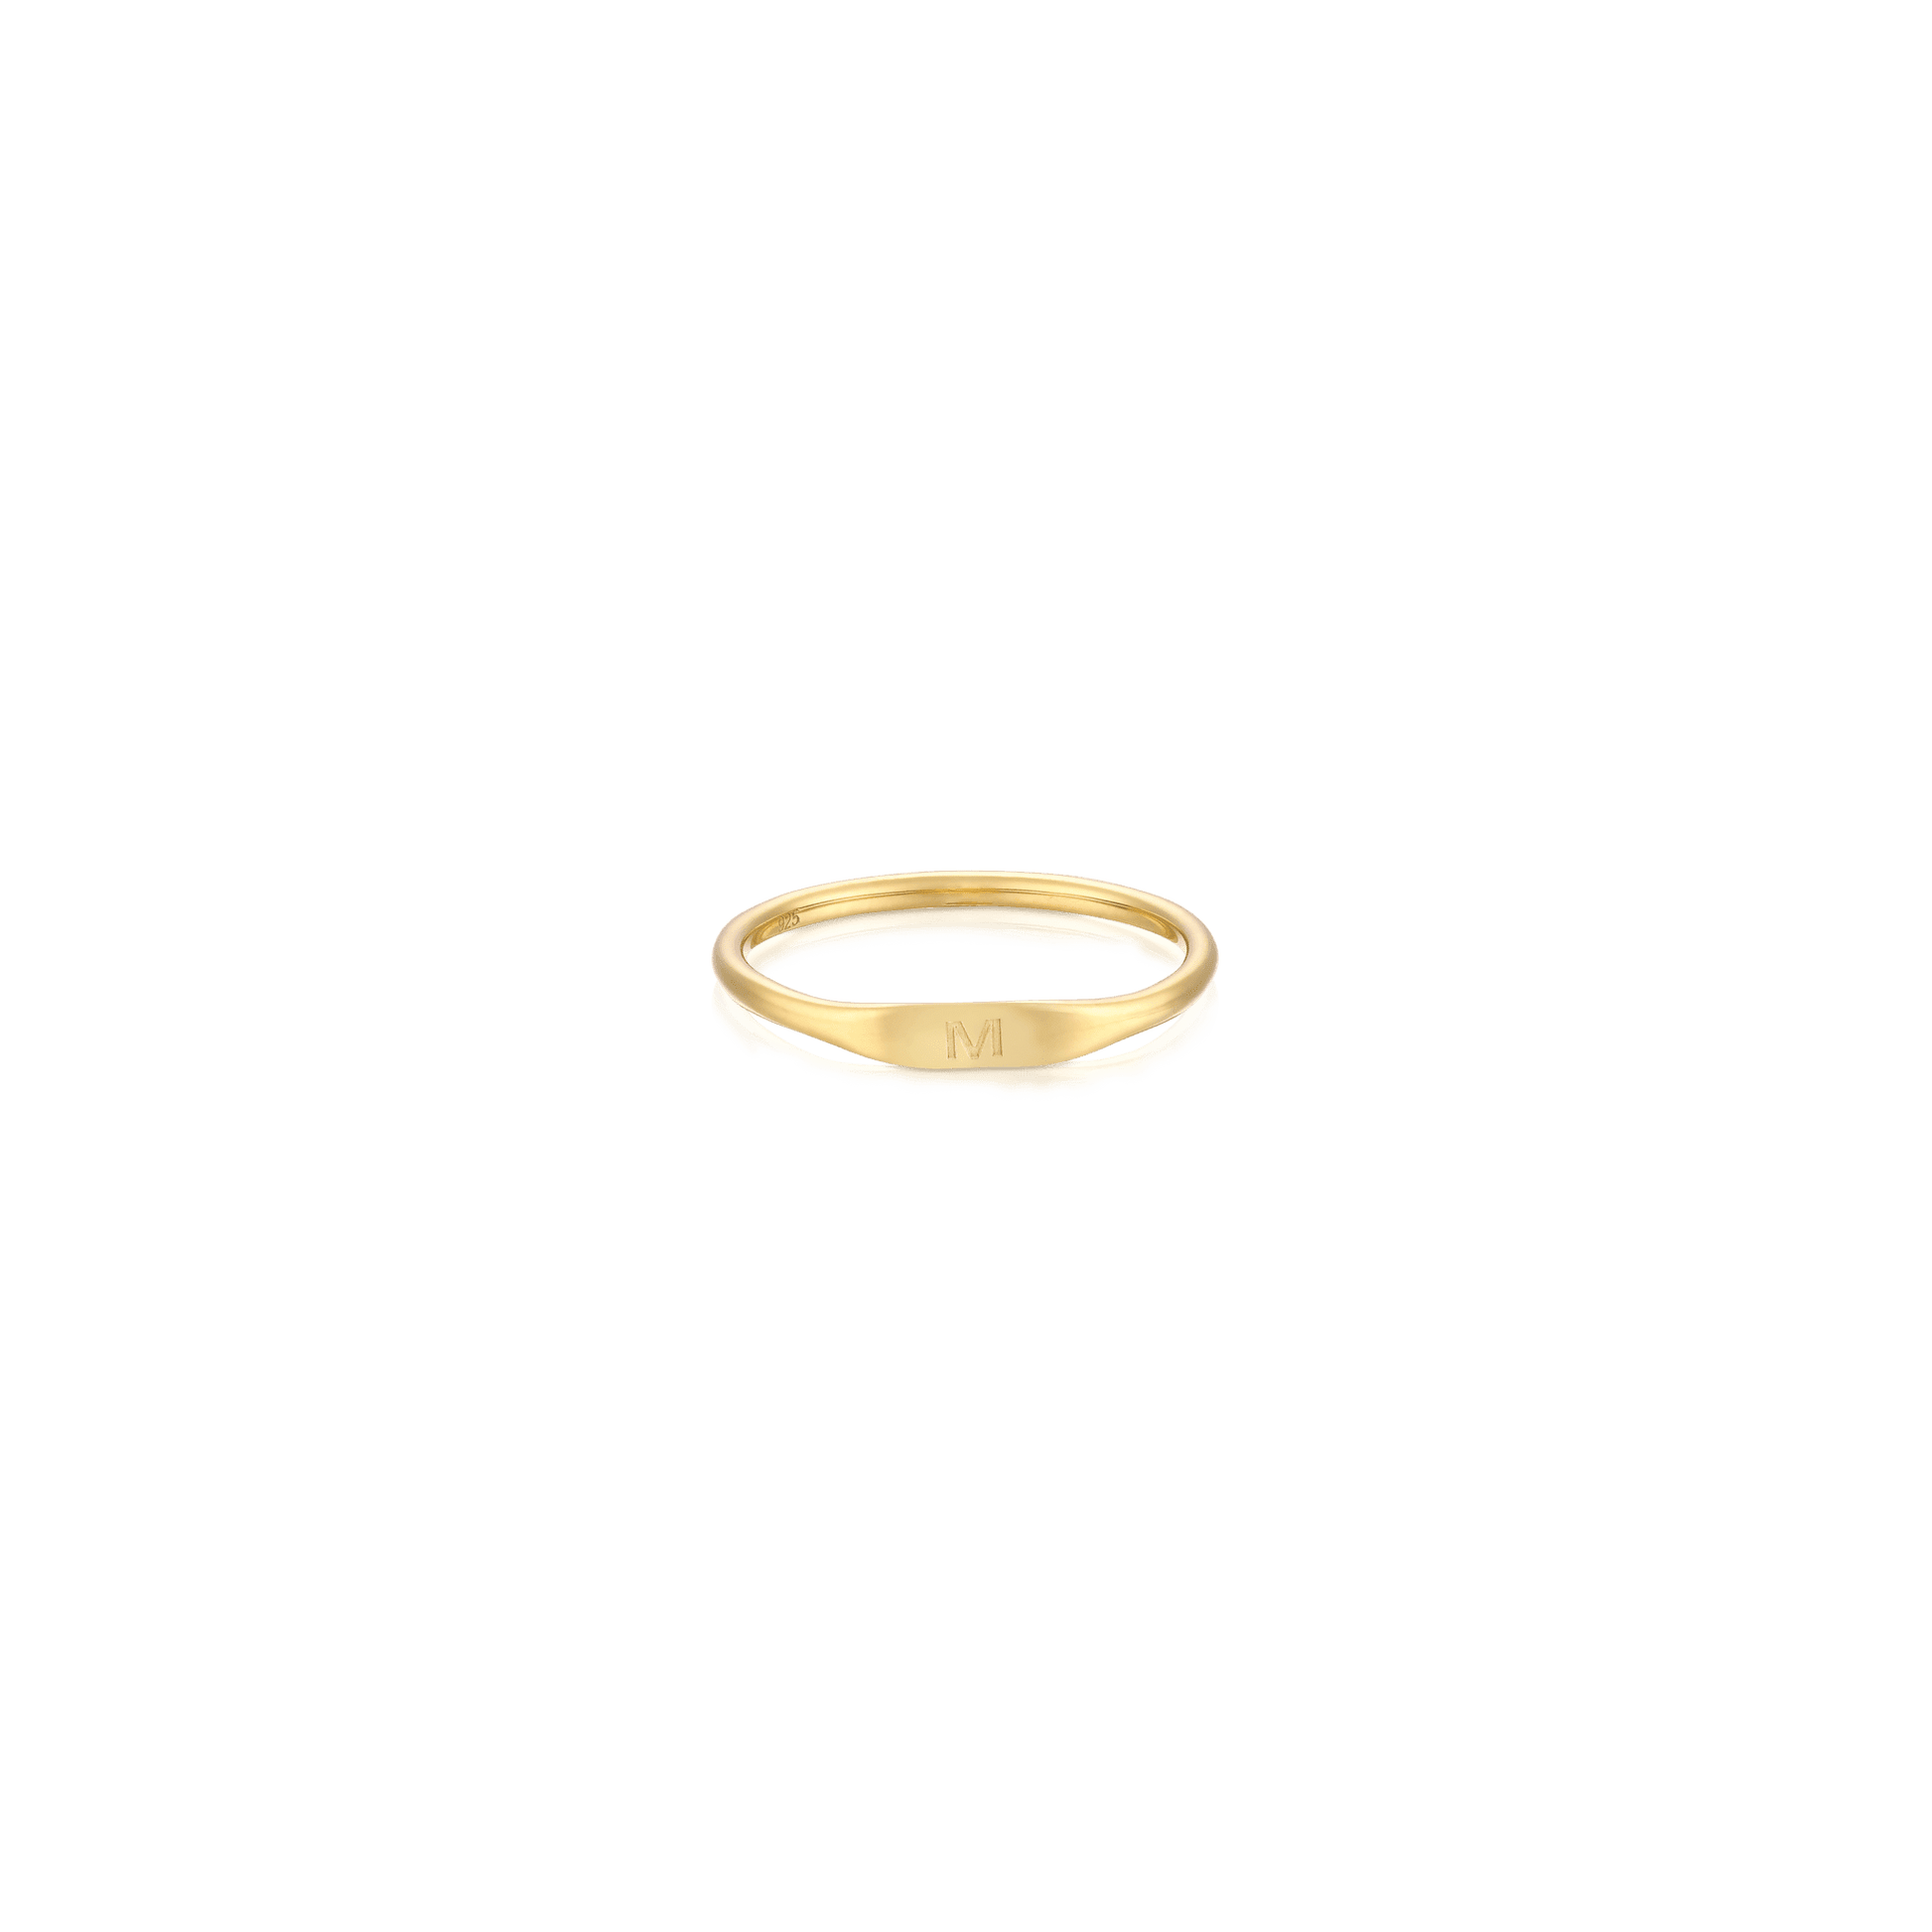 It Ring - 18K Gold Vermeil Rings magal-dev US 4 